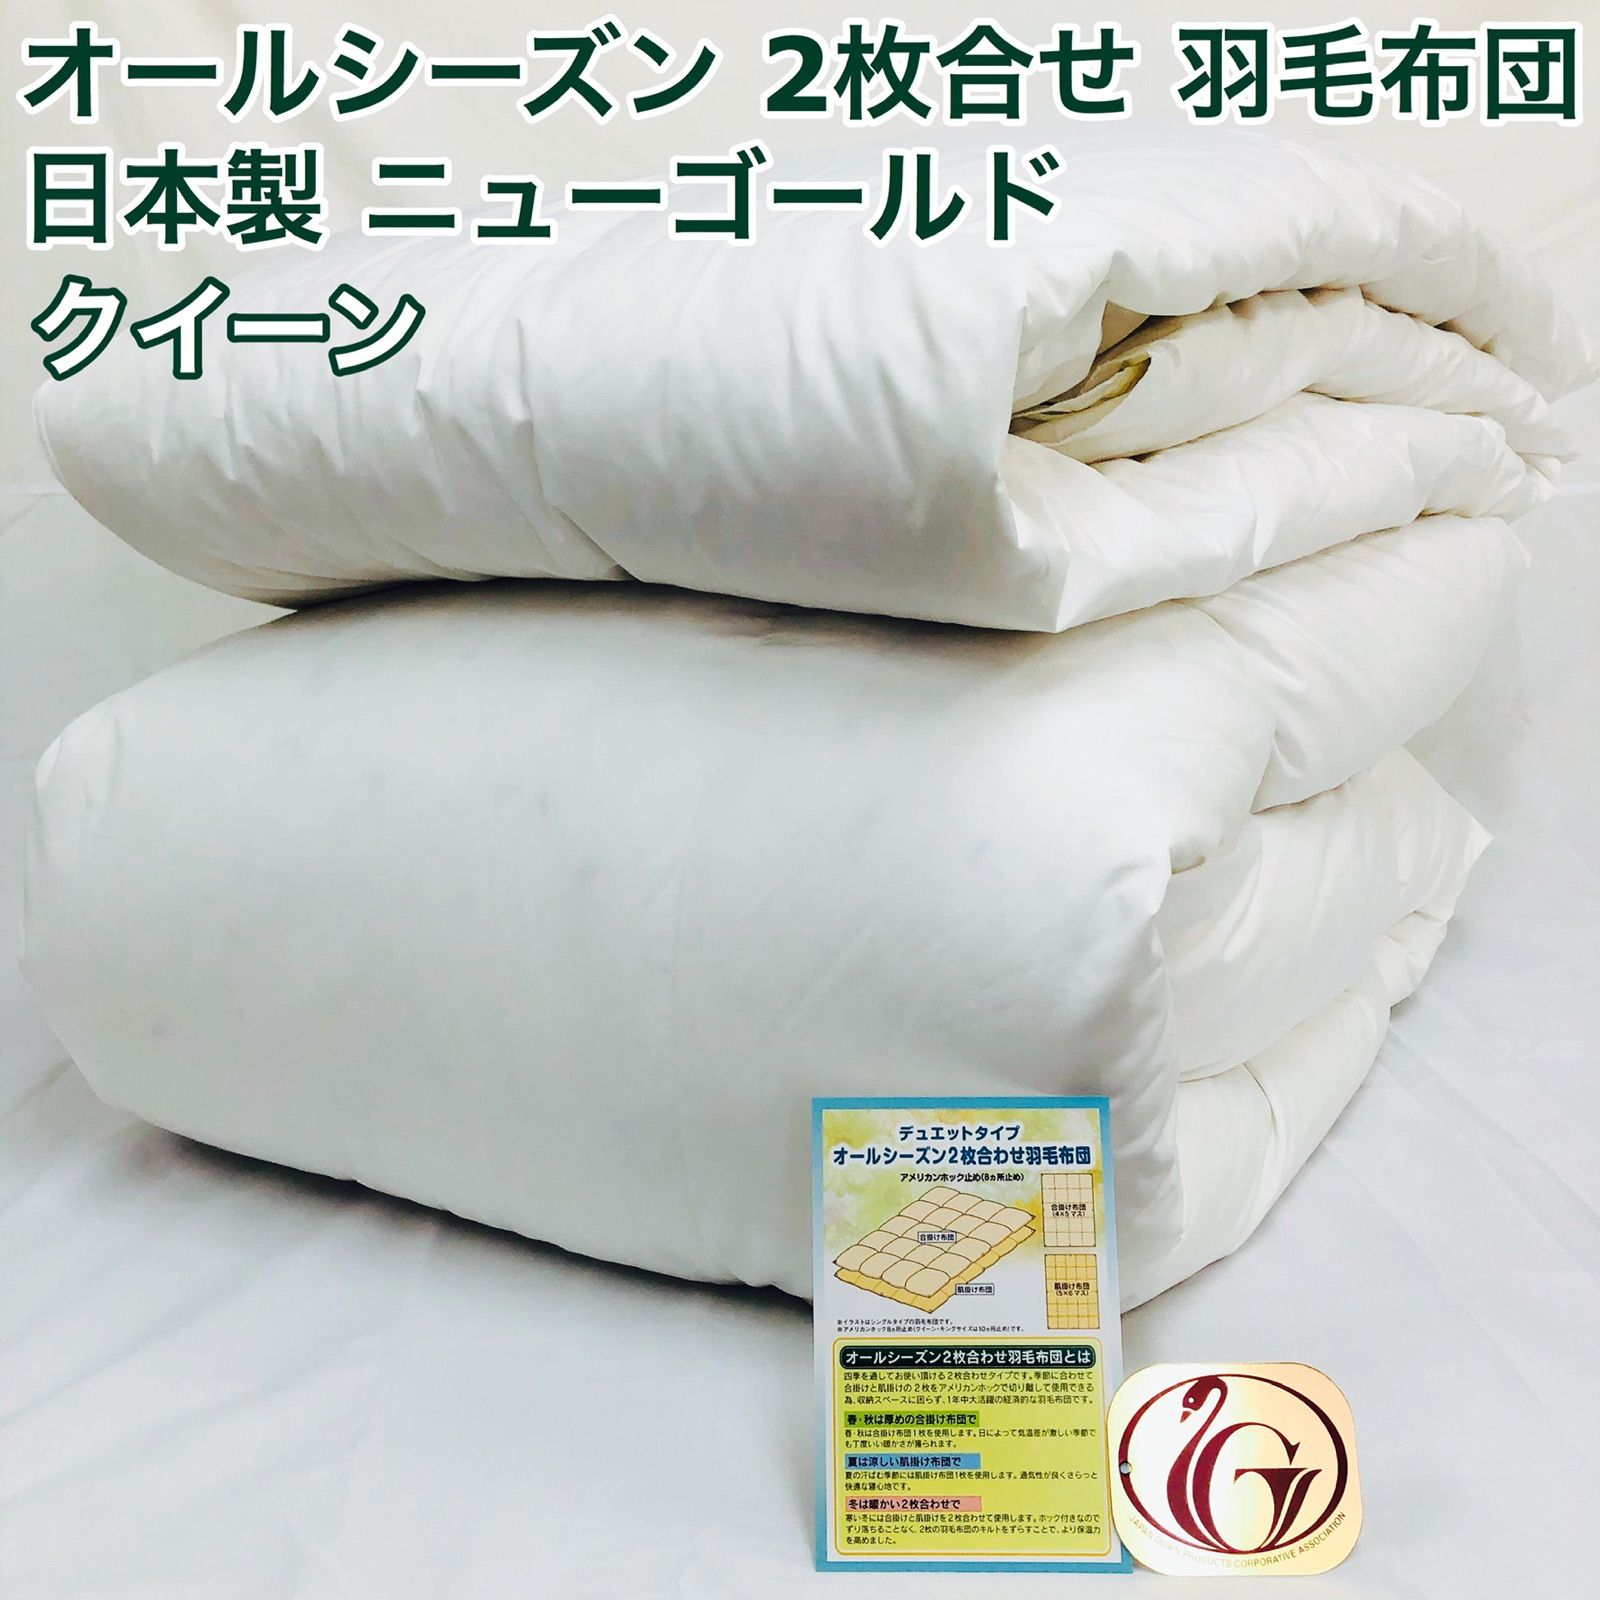 2枚合わせ 羽毛布団 クイーン ニューゴールド 白色 日本製 210×210cm